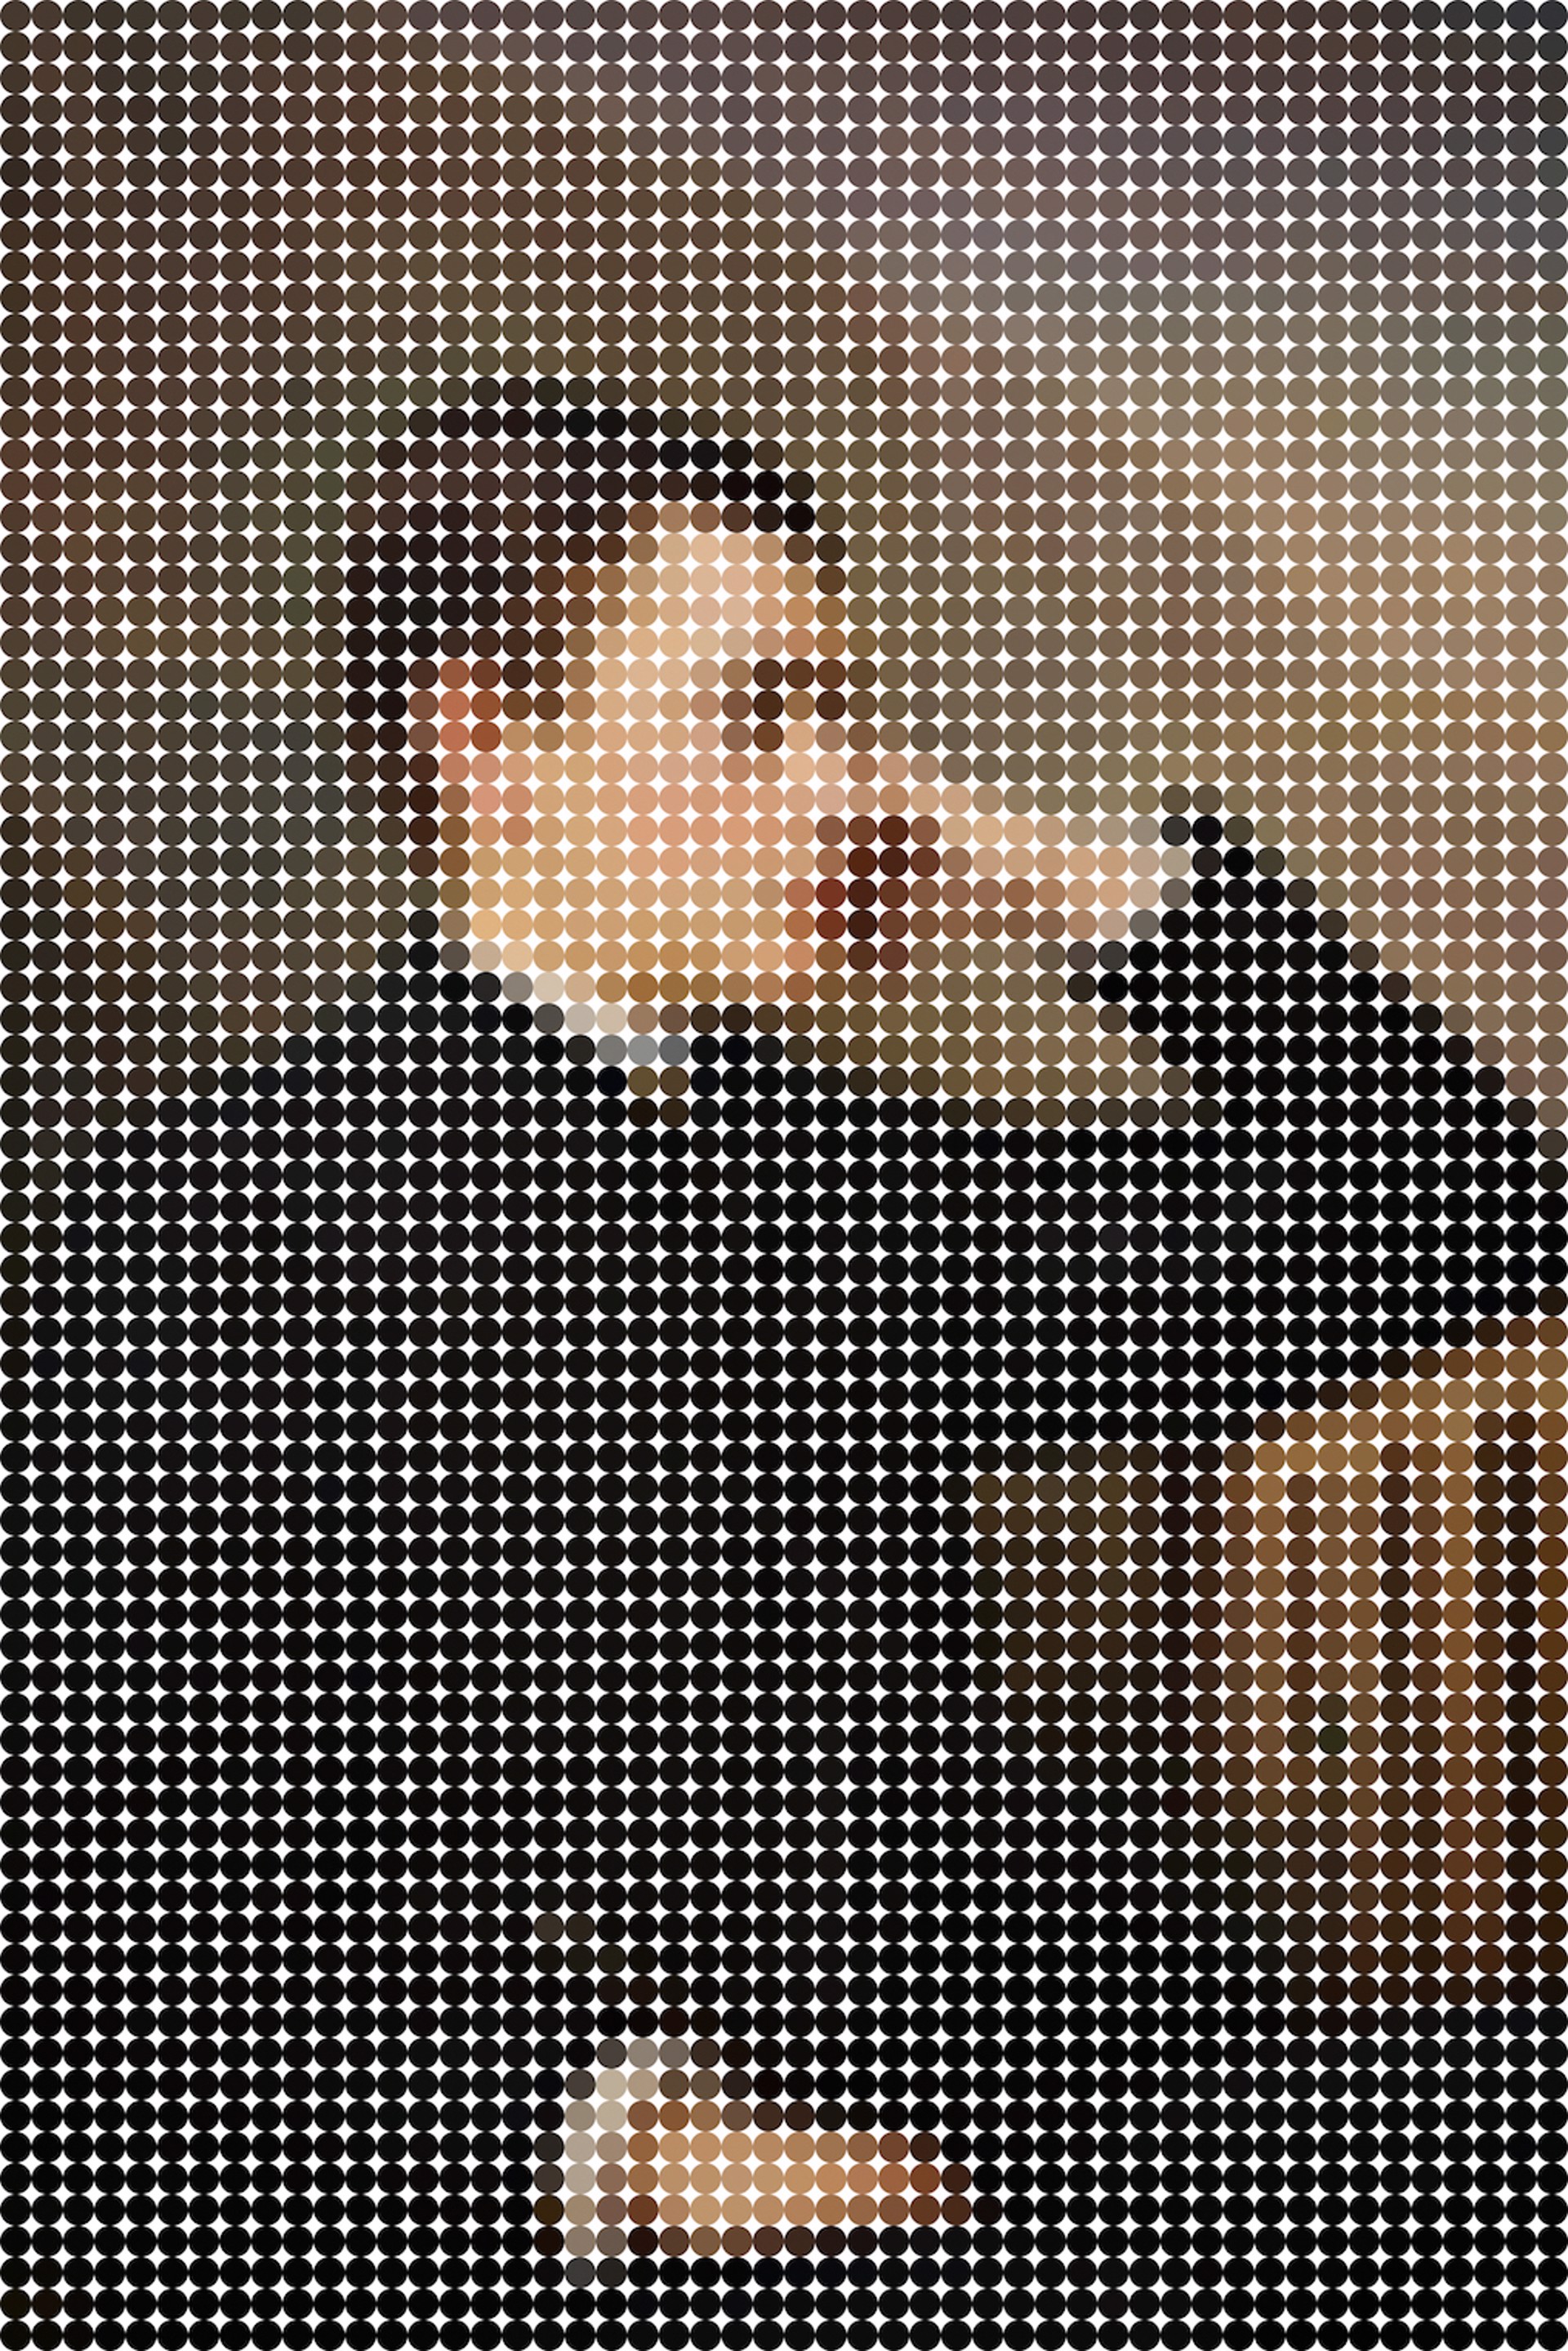 Dot Portrait XB3340 by John Watson